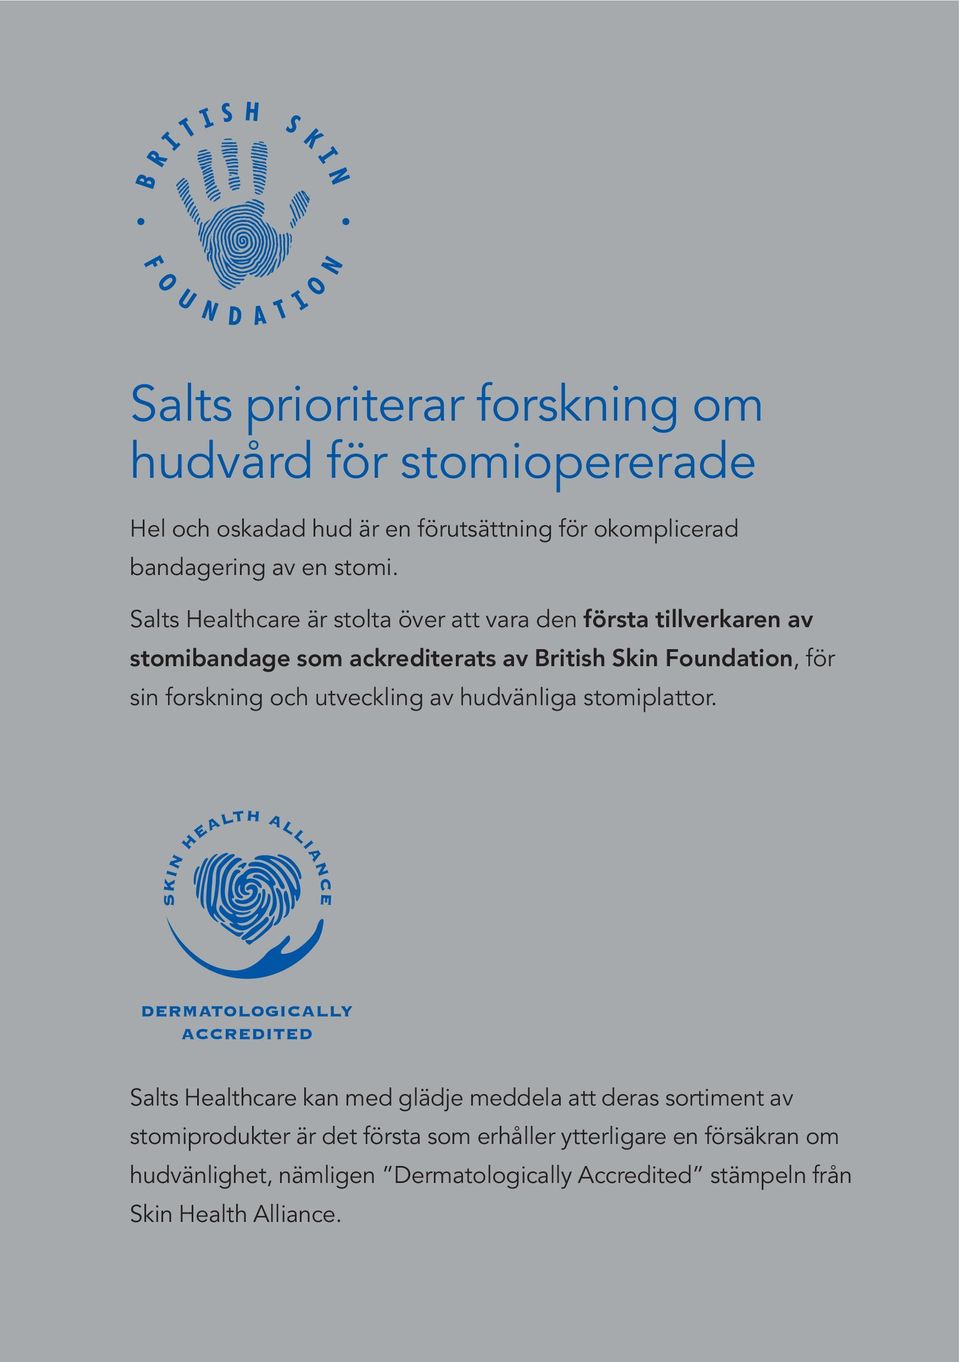 Salts Healthcare är stolta över att vara den första tillverkaren av stomibandage som ackrediterats av British Skin Foundation, för sin